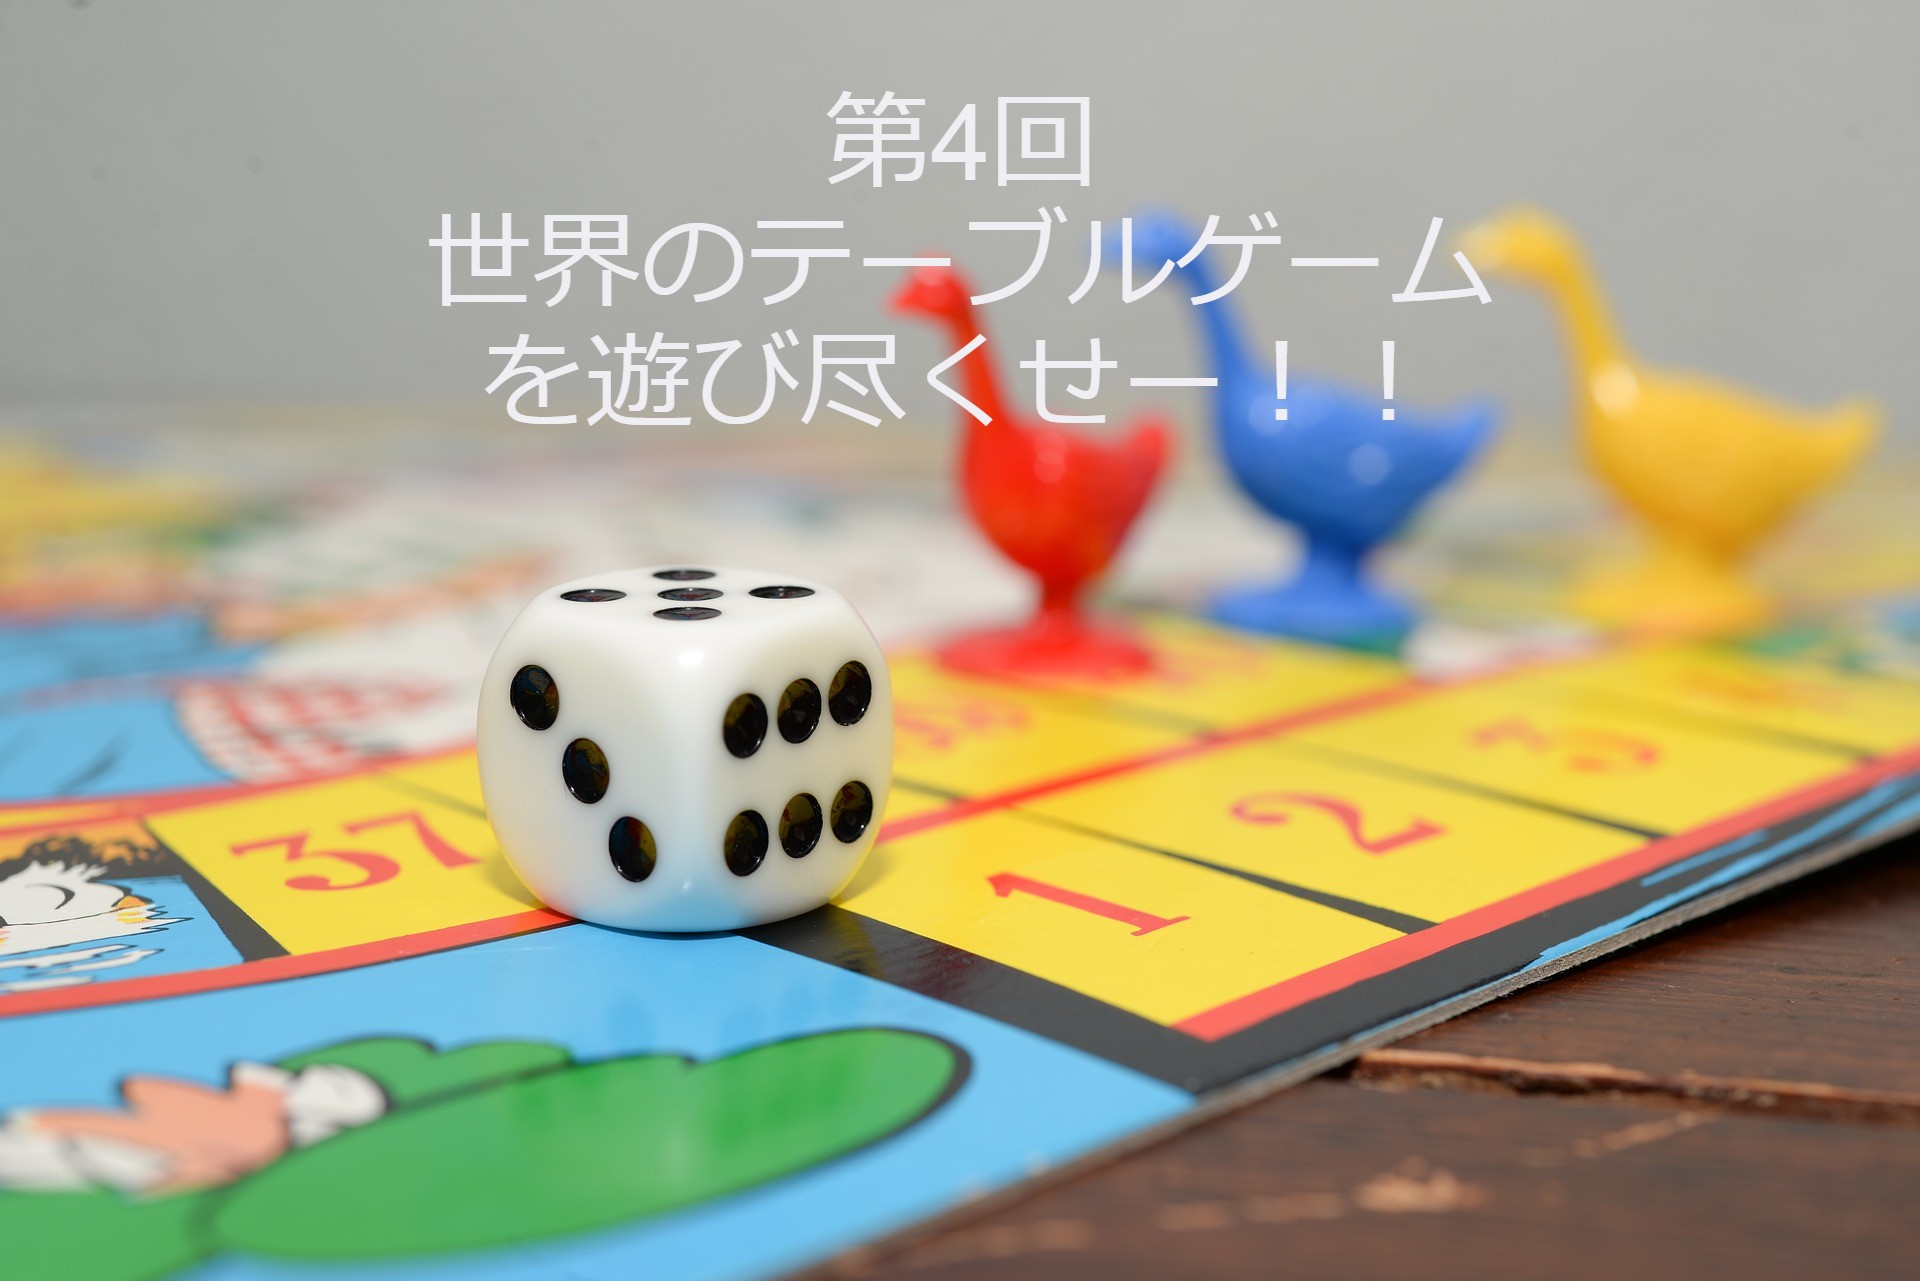 松本が絶賛 ガキの使い で紹介された世界のテーブルゲーム3種 6 30放送分 Vamos シニア